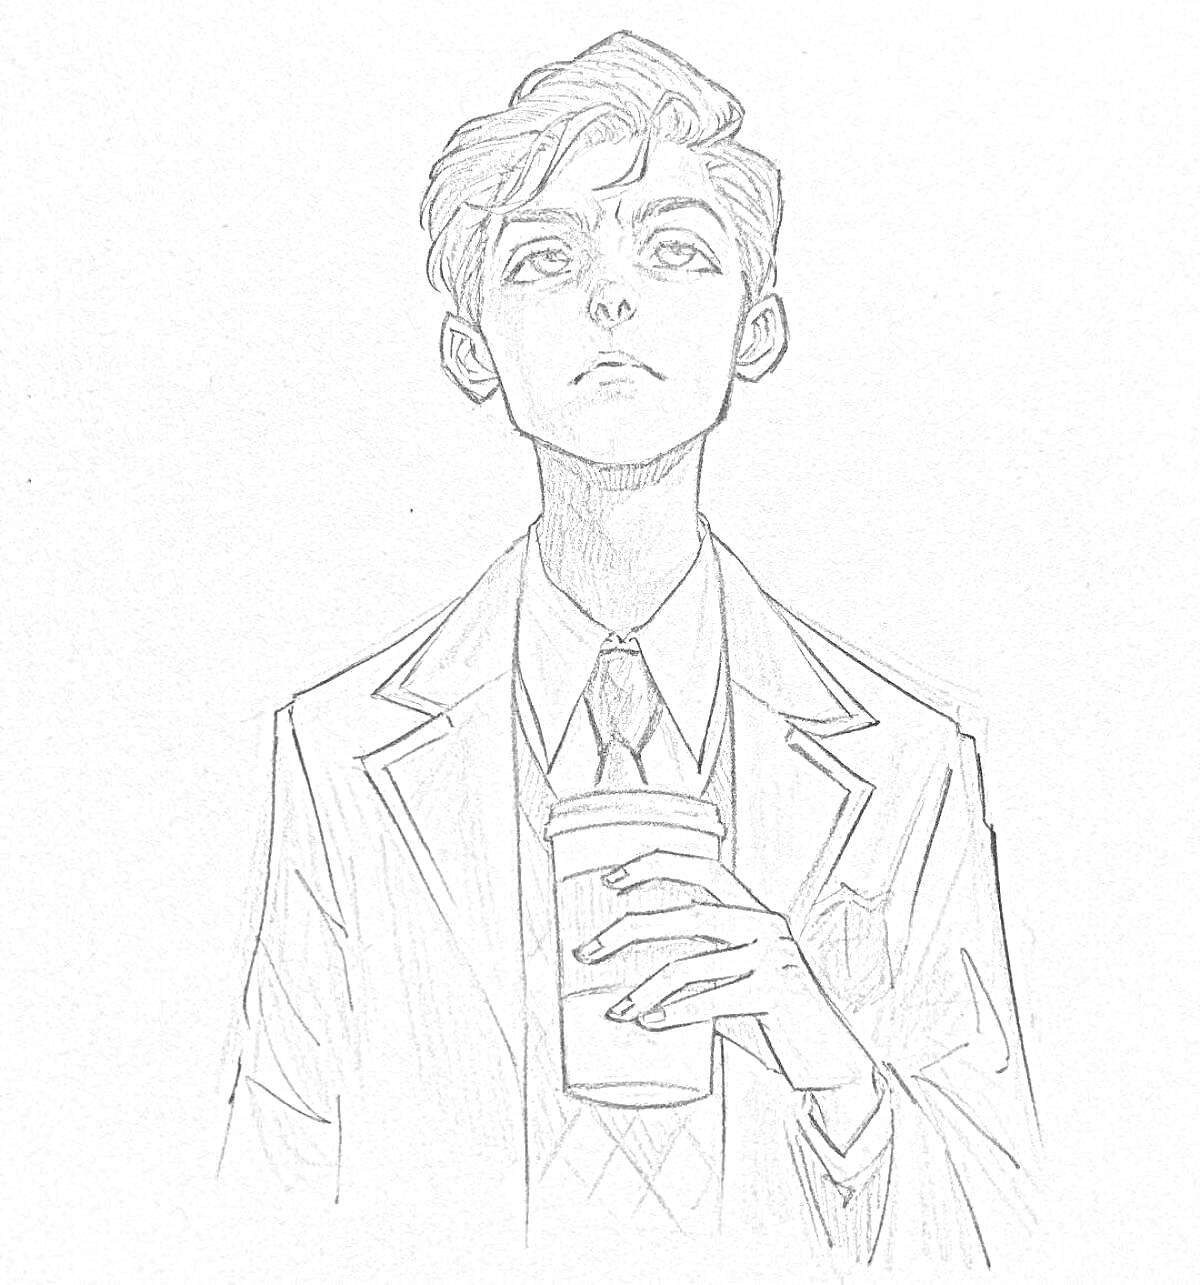 РаскраскаПортрет молодого человека с чашкой кофе, в костюме и галстуке